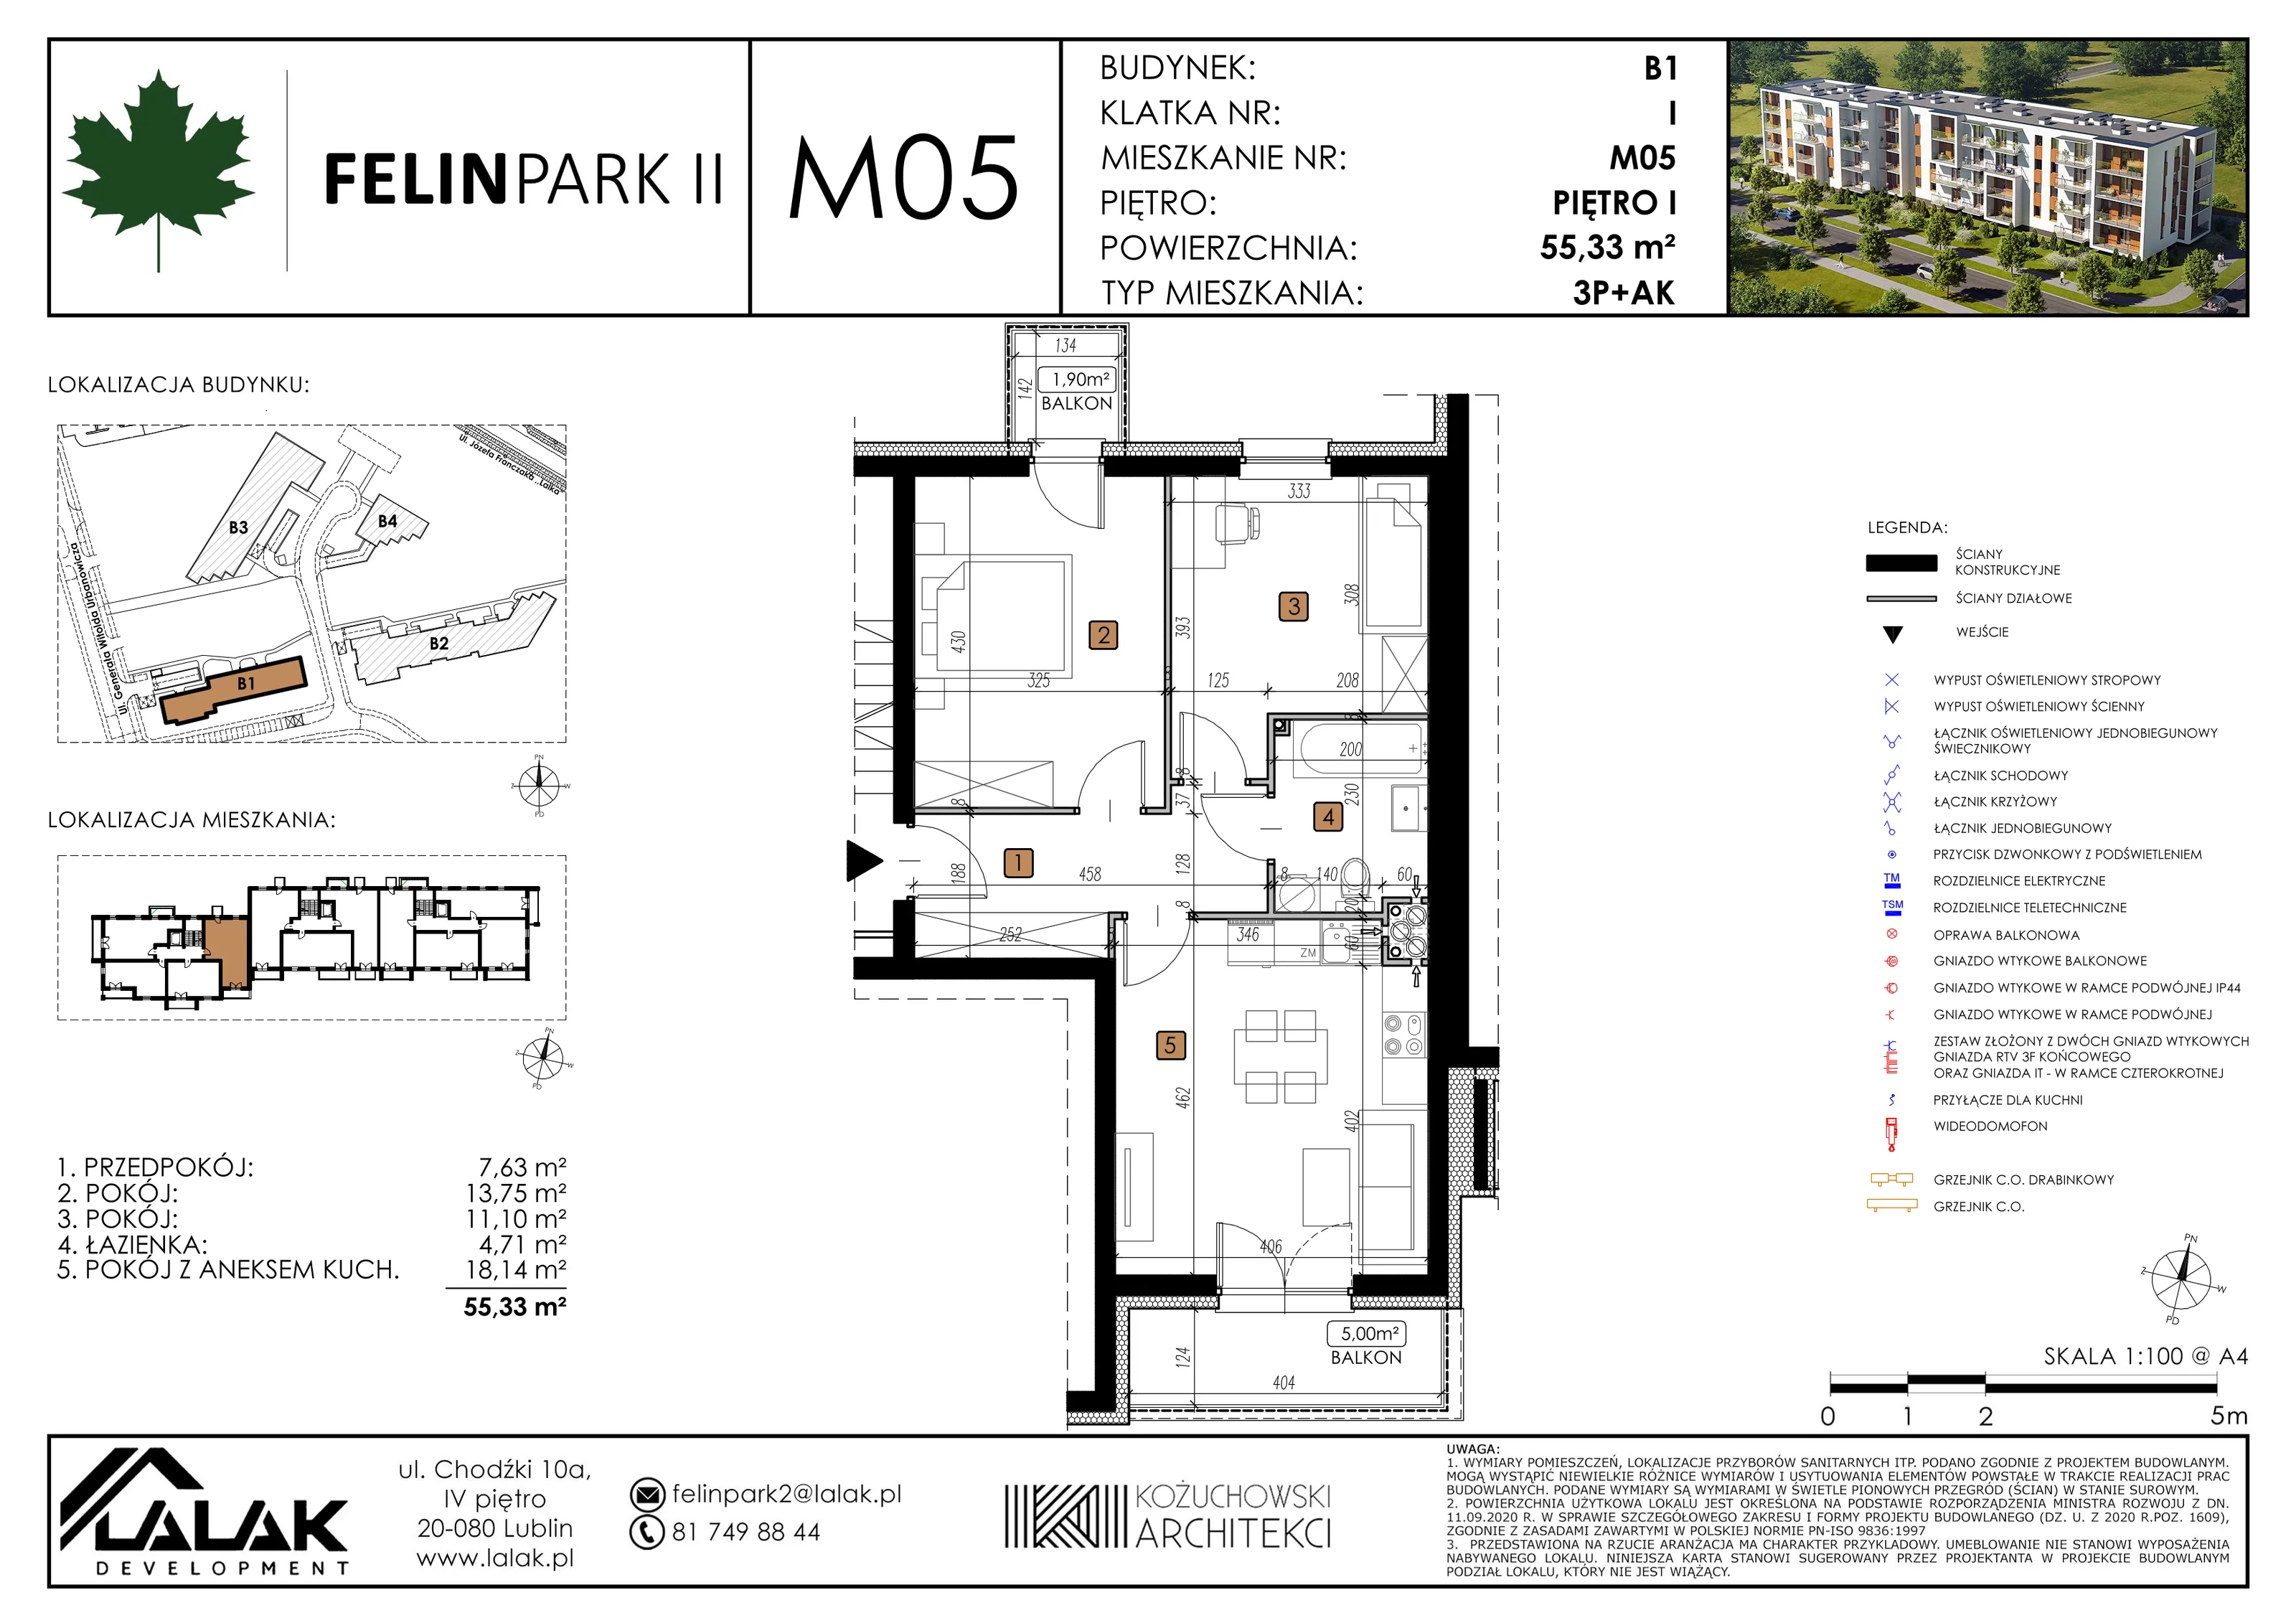 Mieszkanie 55,33 m², piętro 1, oferta nr B1_M5/I, Felin Park II, Lublin, Felin, ul. gen. Stanisława Skalskiego 8-10